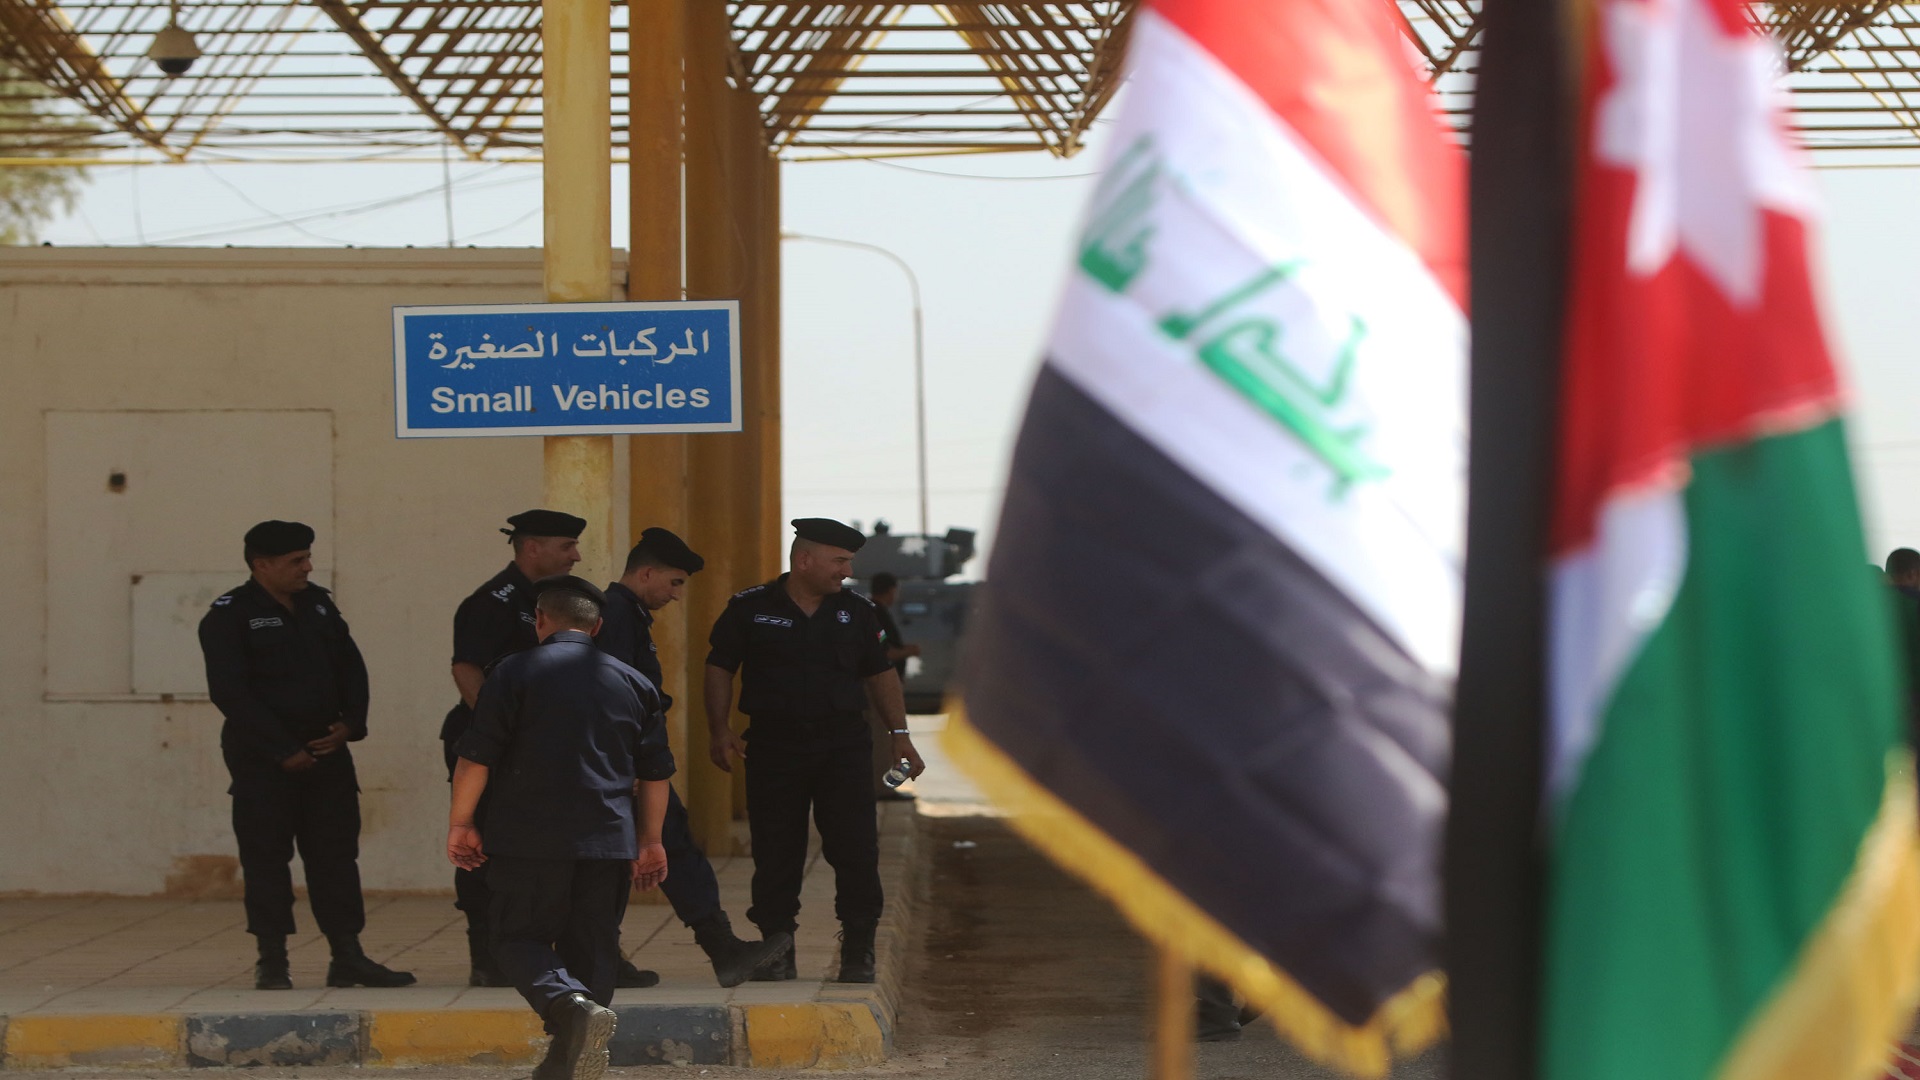 العراق ثالث أكبر مستورد للصناعات الكيميائية والتجميلية من الاردن